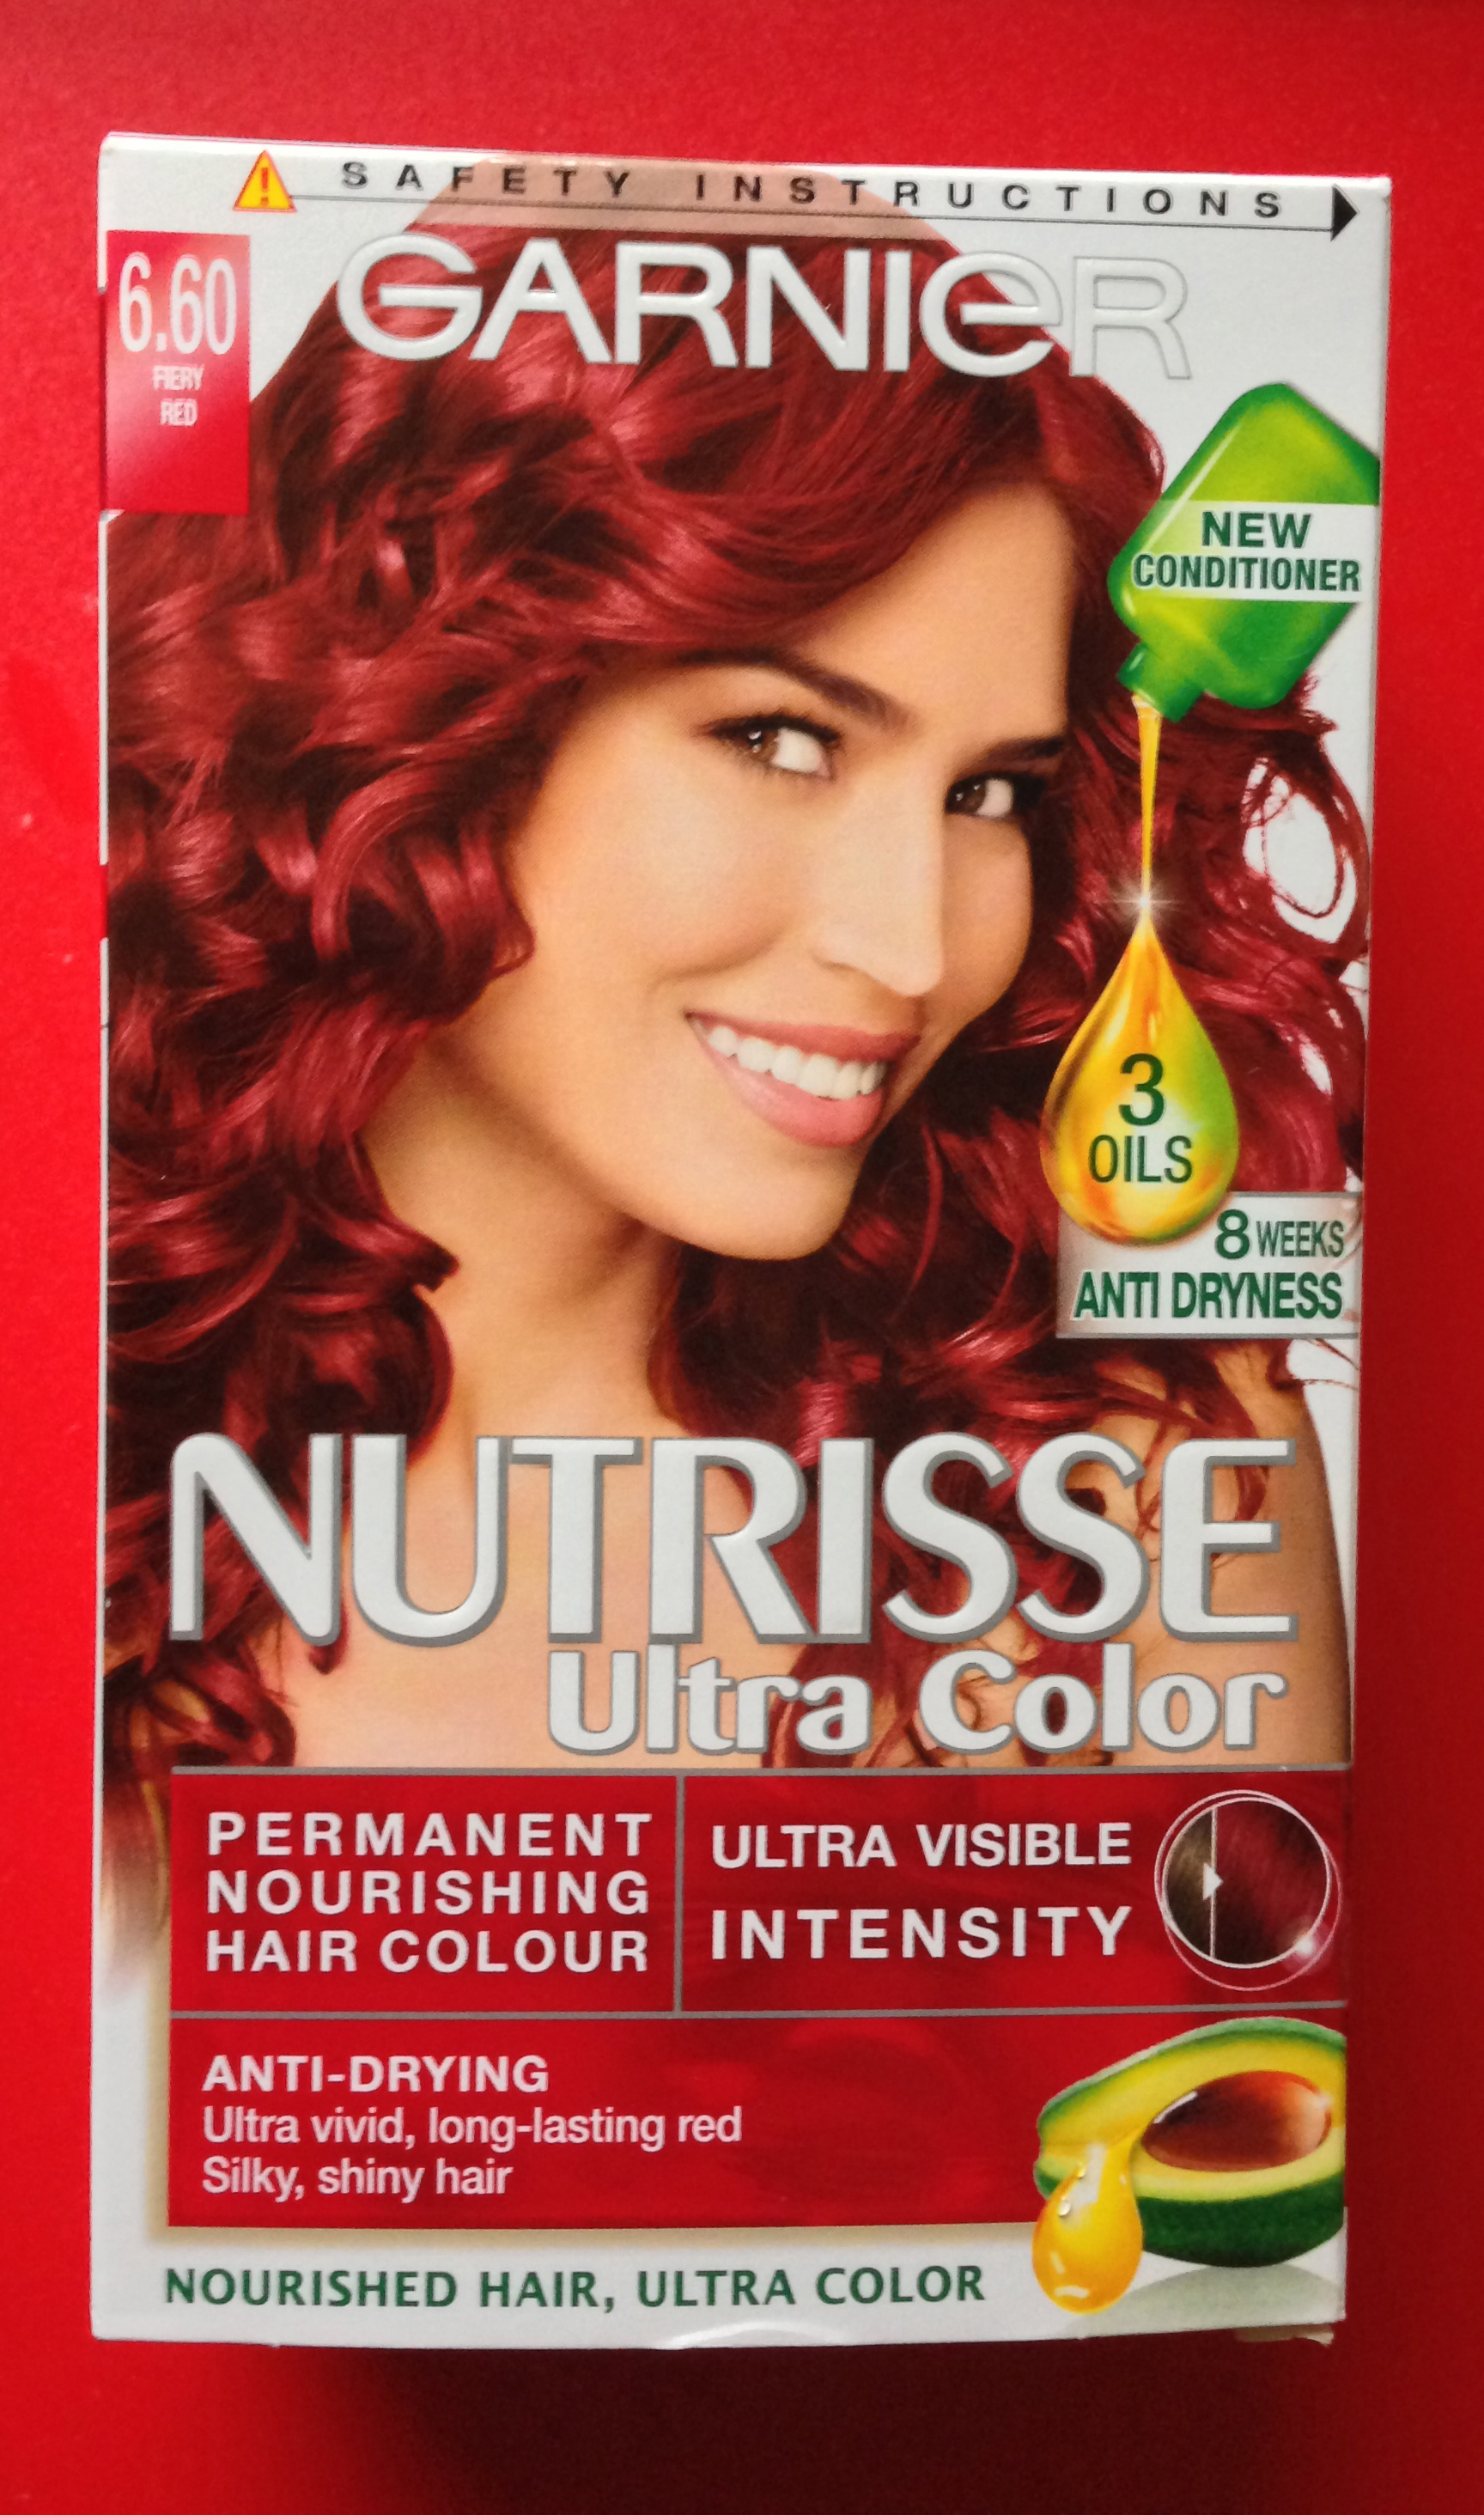 garnier hair color shades photo - 4